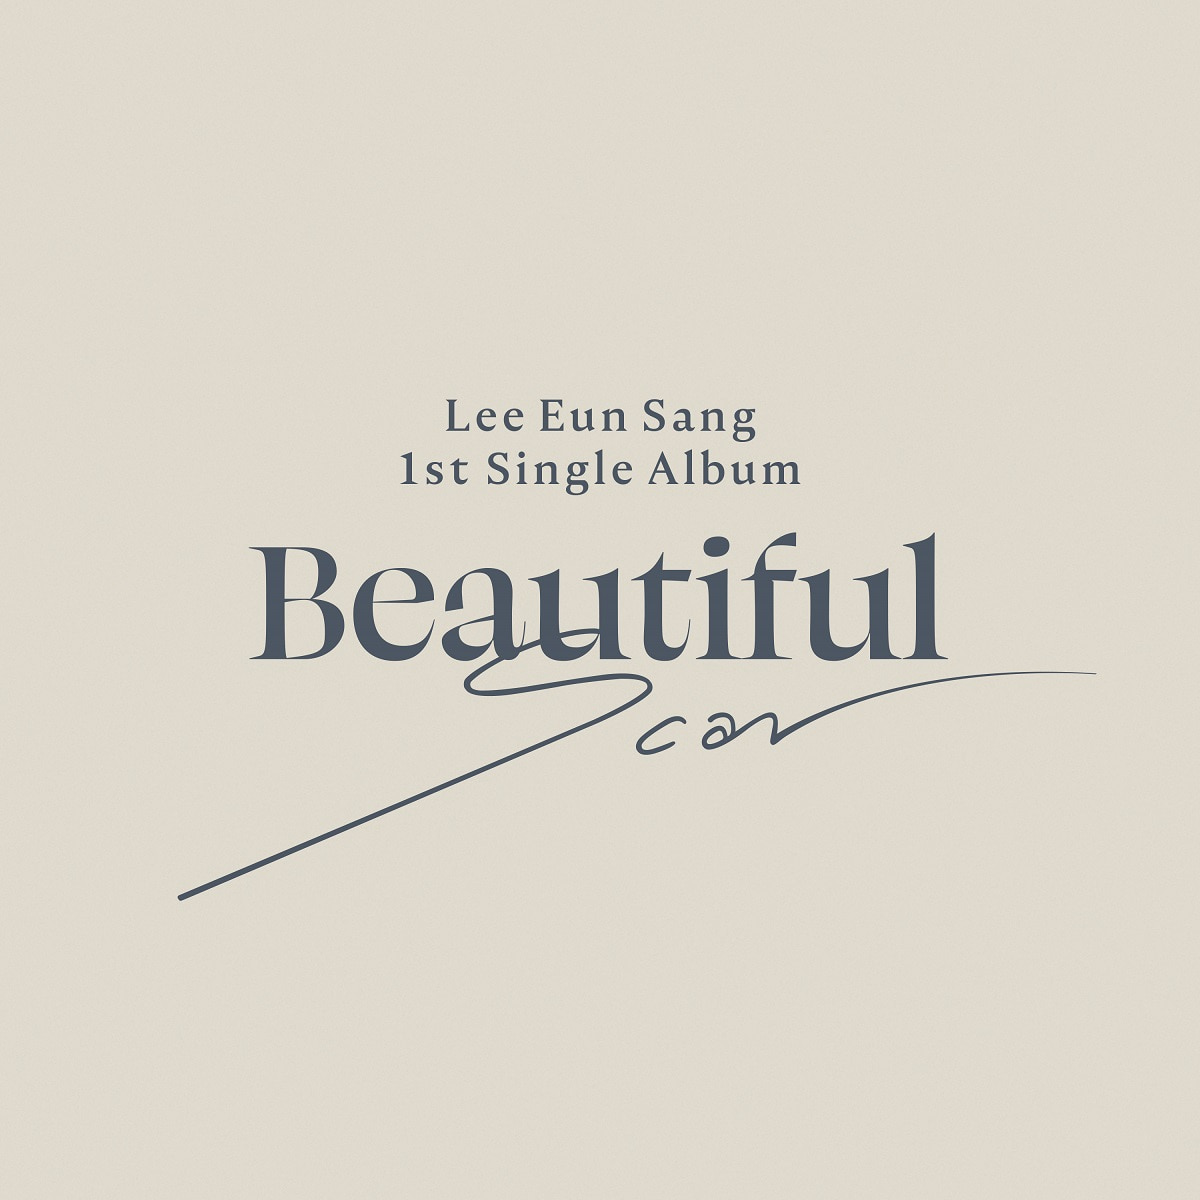 LEE EUN SANG - Mini Album Vol.1 [Beautiful Scar] (Beautiful Ver.)케이팝스토어(kpop store)